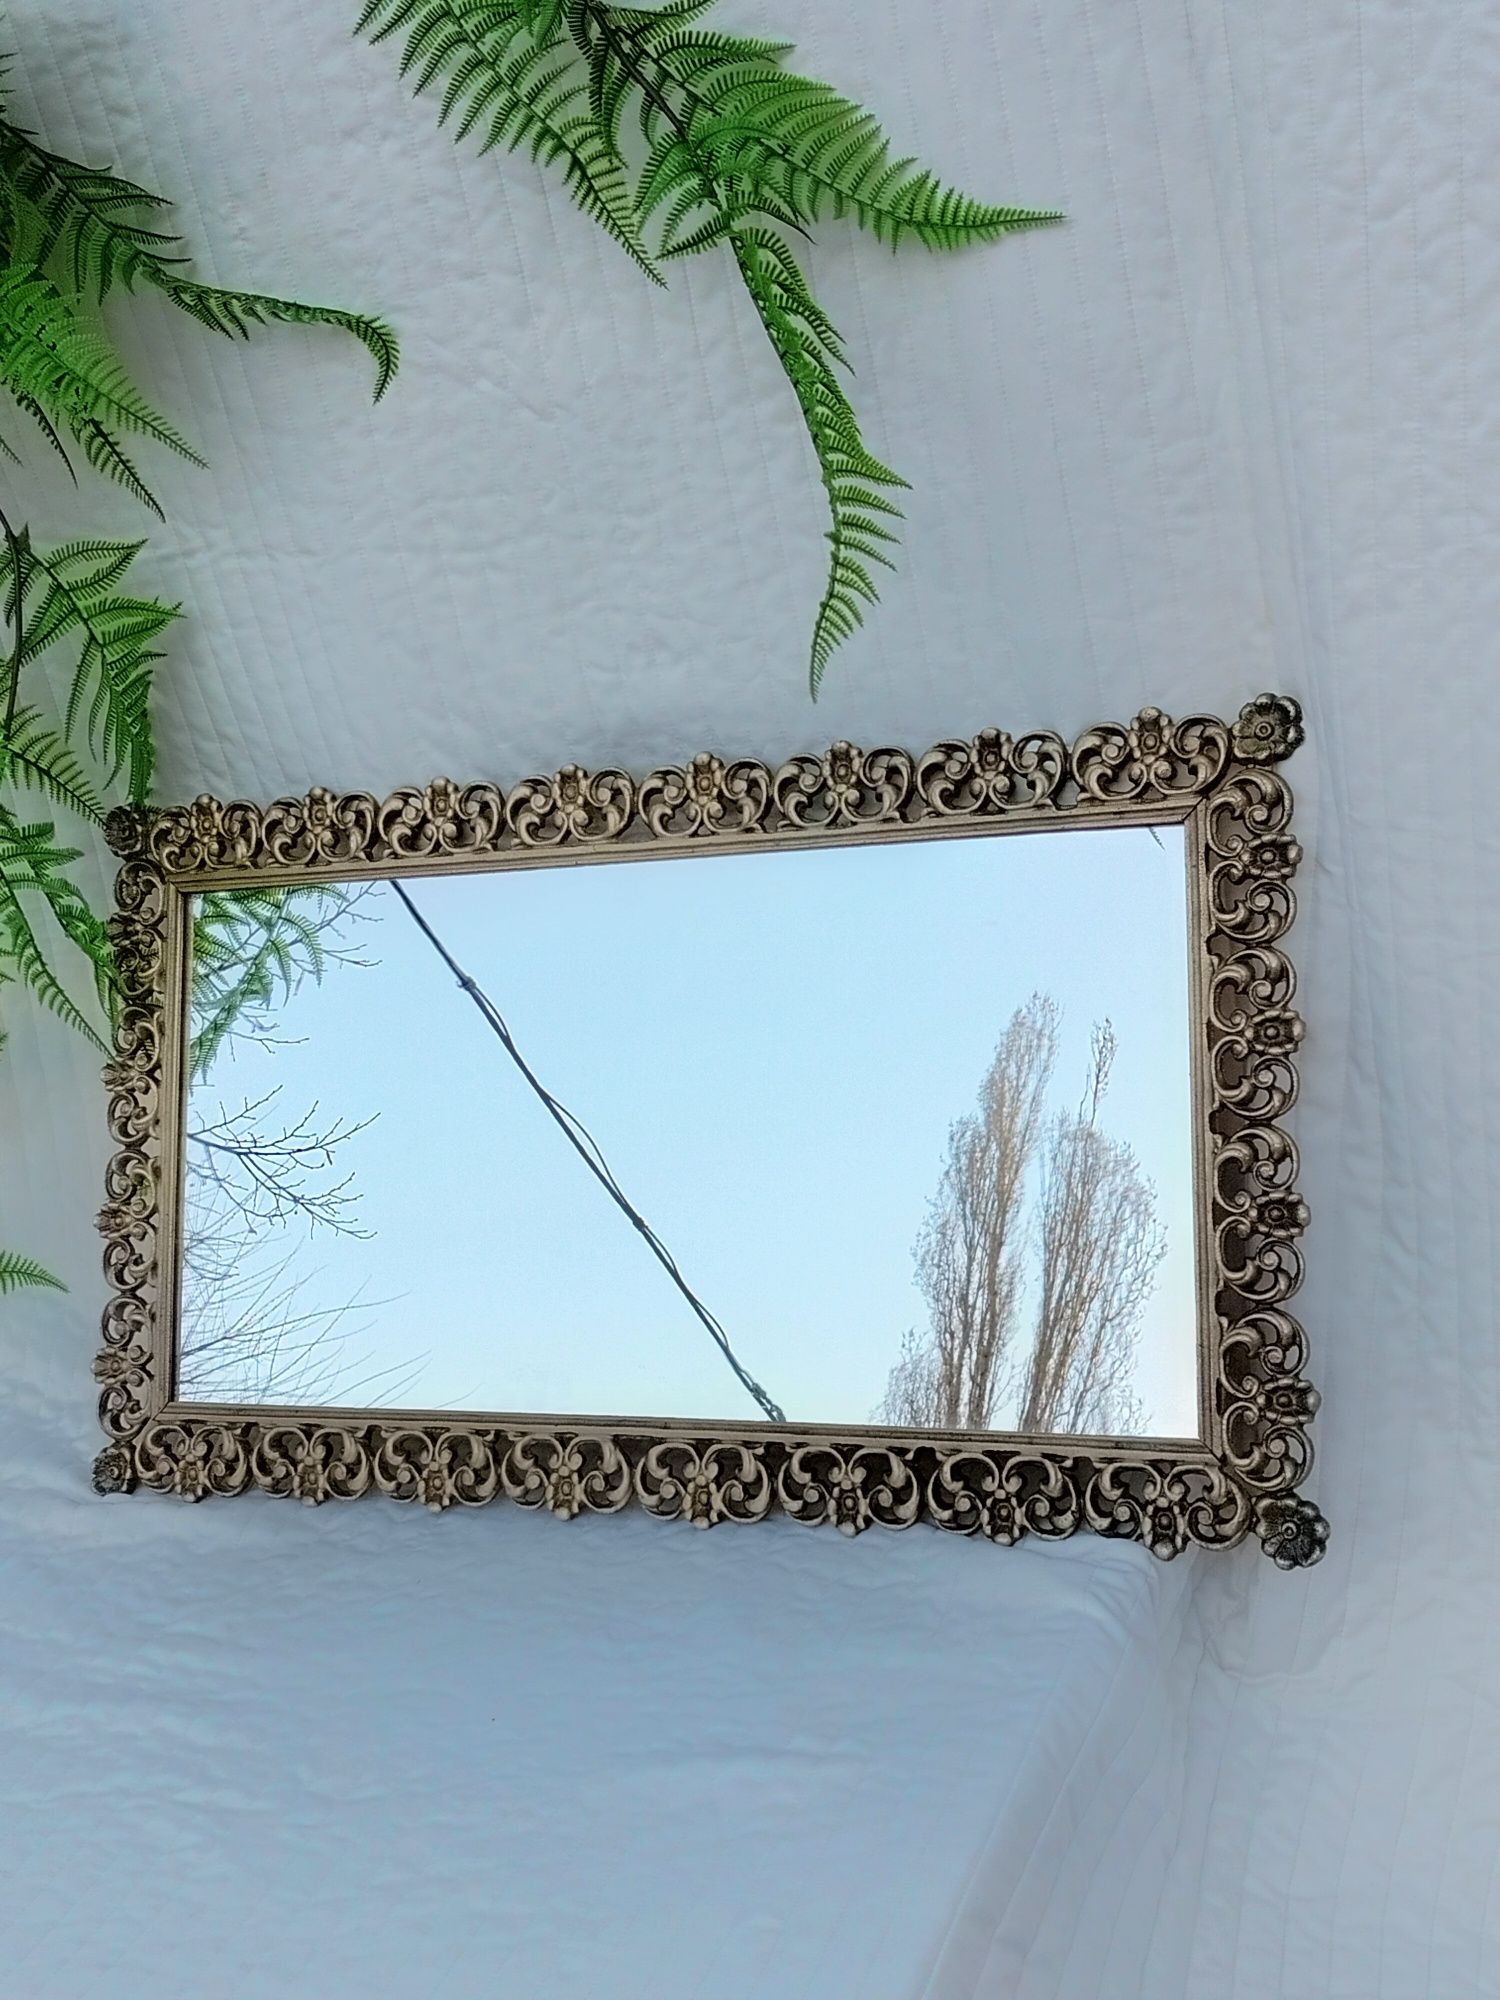 Продам зеркало настенное из бронзы или латуни.Зеркало бронзовое или л